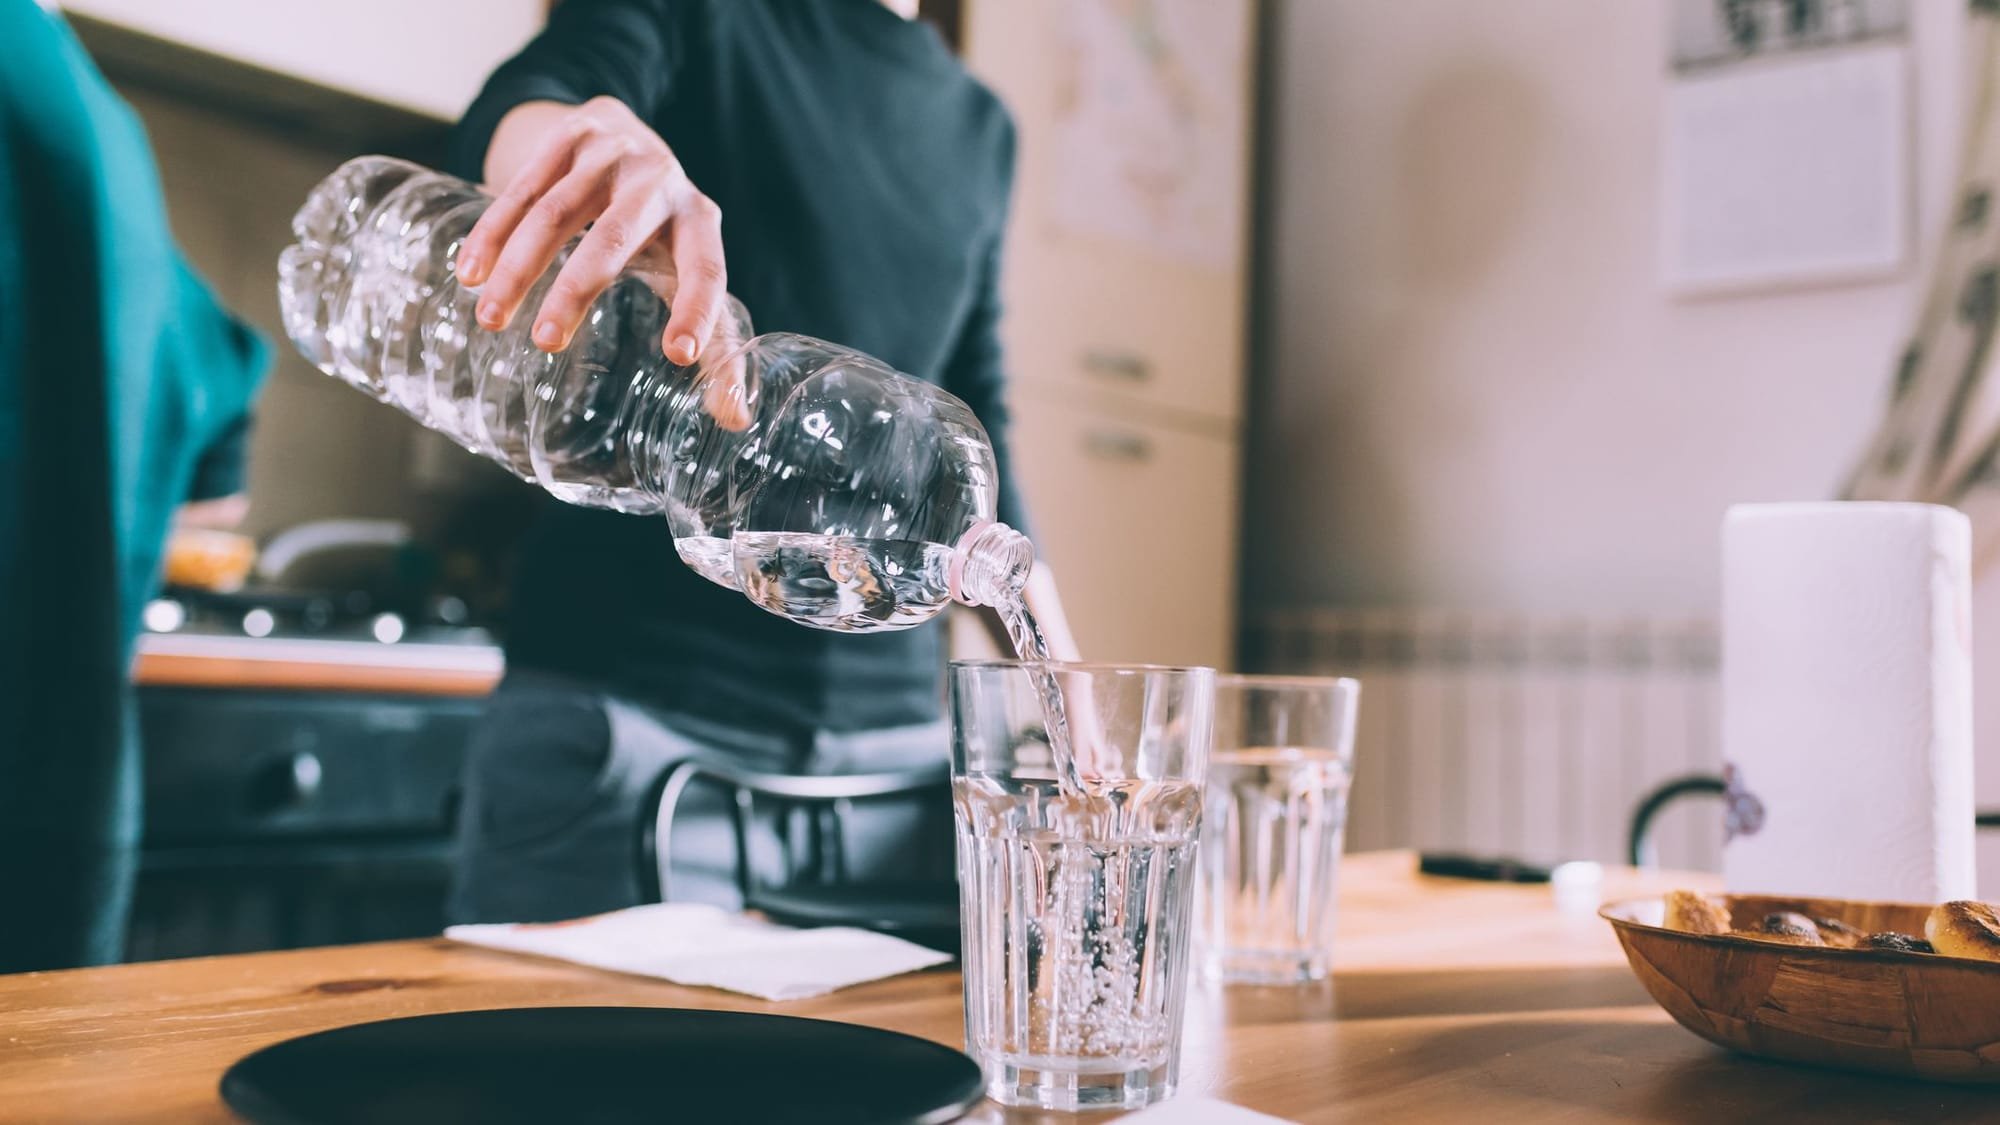 ما أضرار شرب الماء أثناء تناول الطعام؟